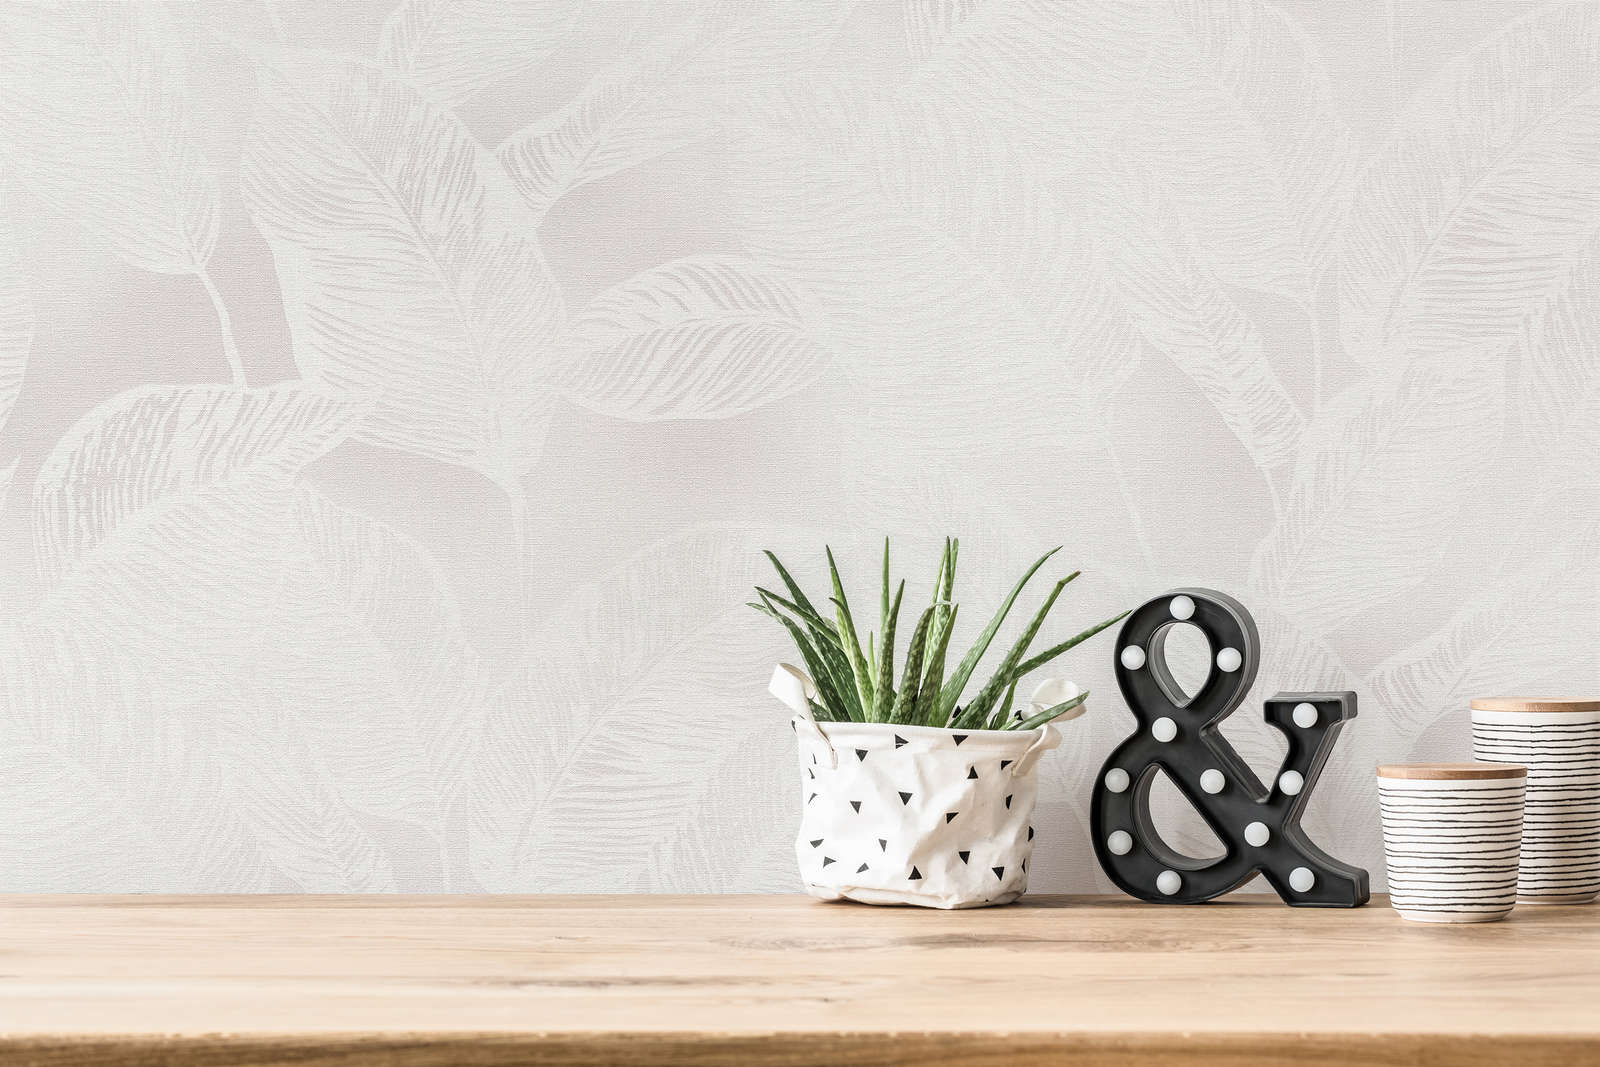             Vliestapete mit Blättern PVC-frei – Weiß, Grau
        